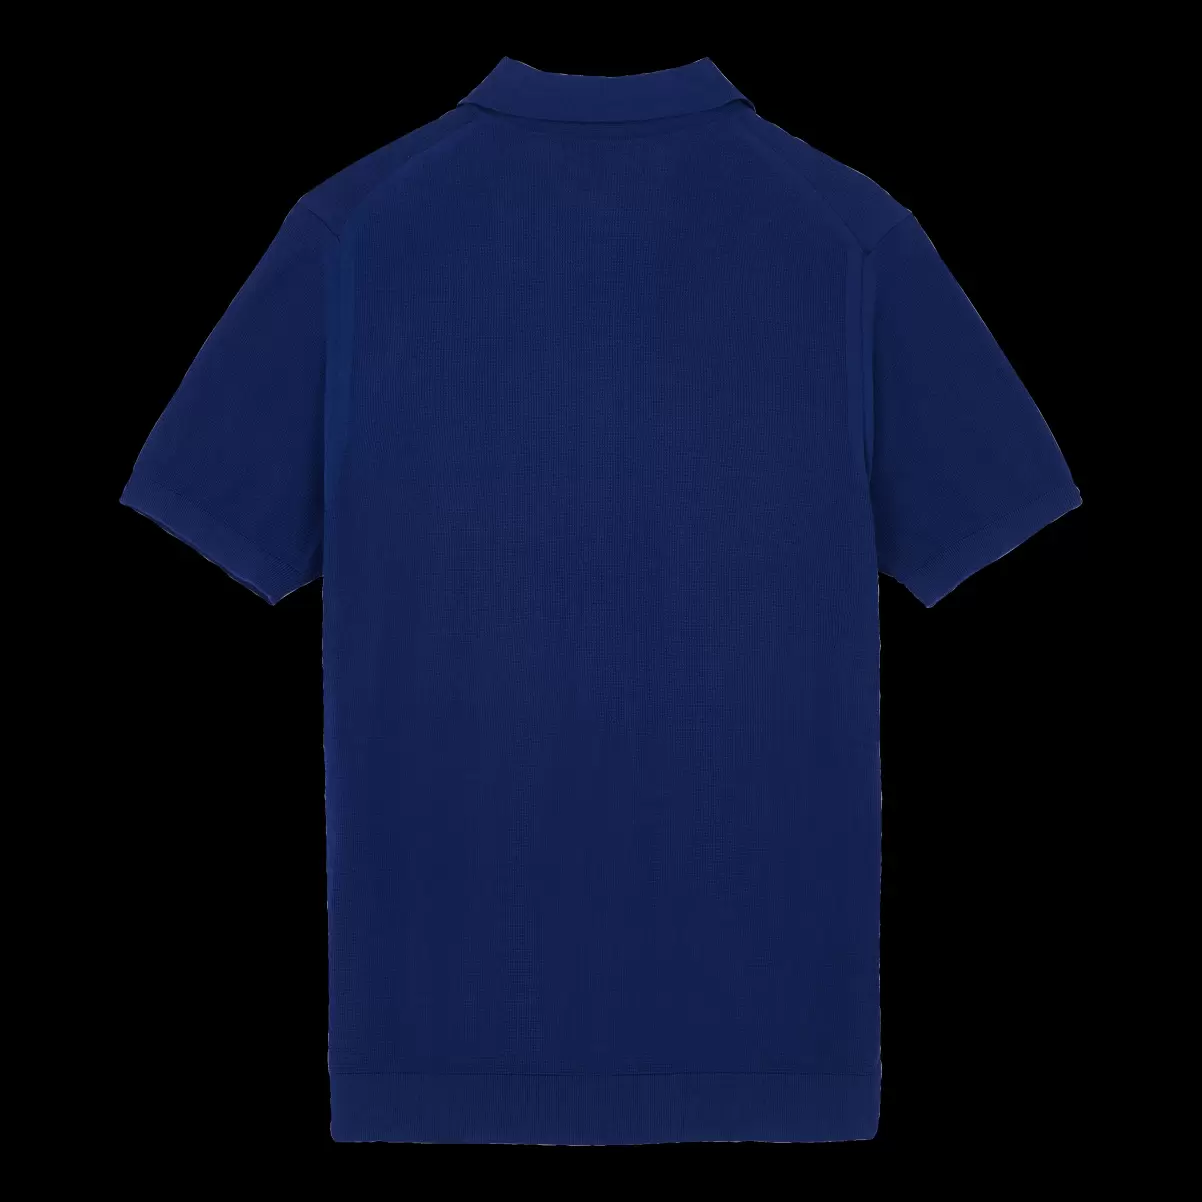 Ausfahrt Ultramarin Blau / Blau Vilebrequin Herren Solid Polohemd Aus Baumwollstrick Für Herren Polohemden - 4